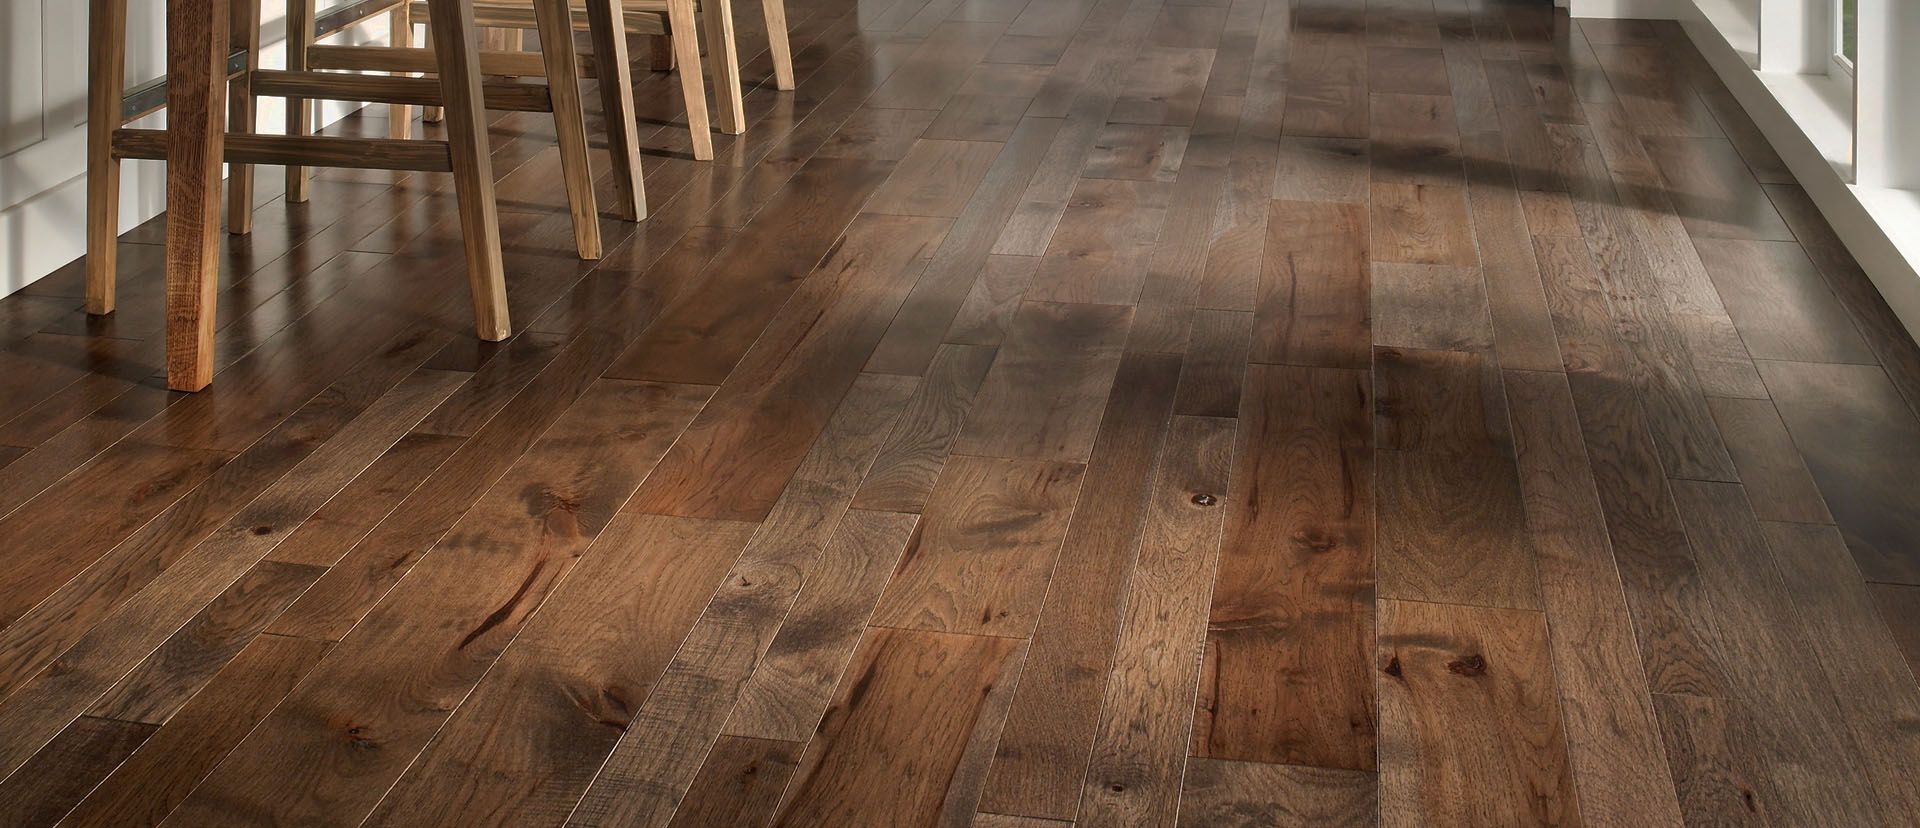 Beautiful Kitchen Hardwood Floor